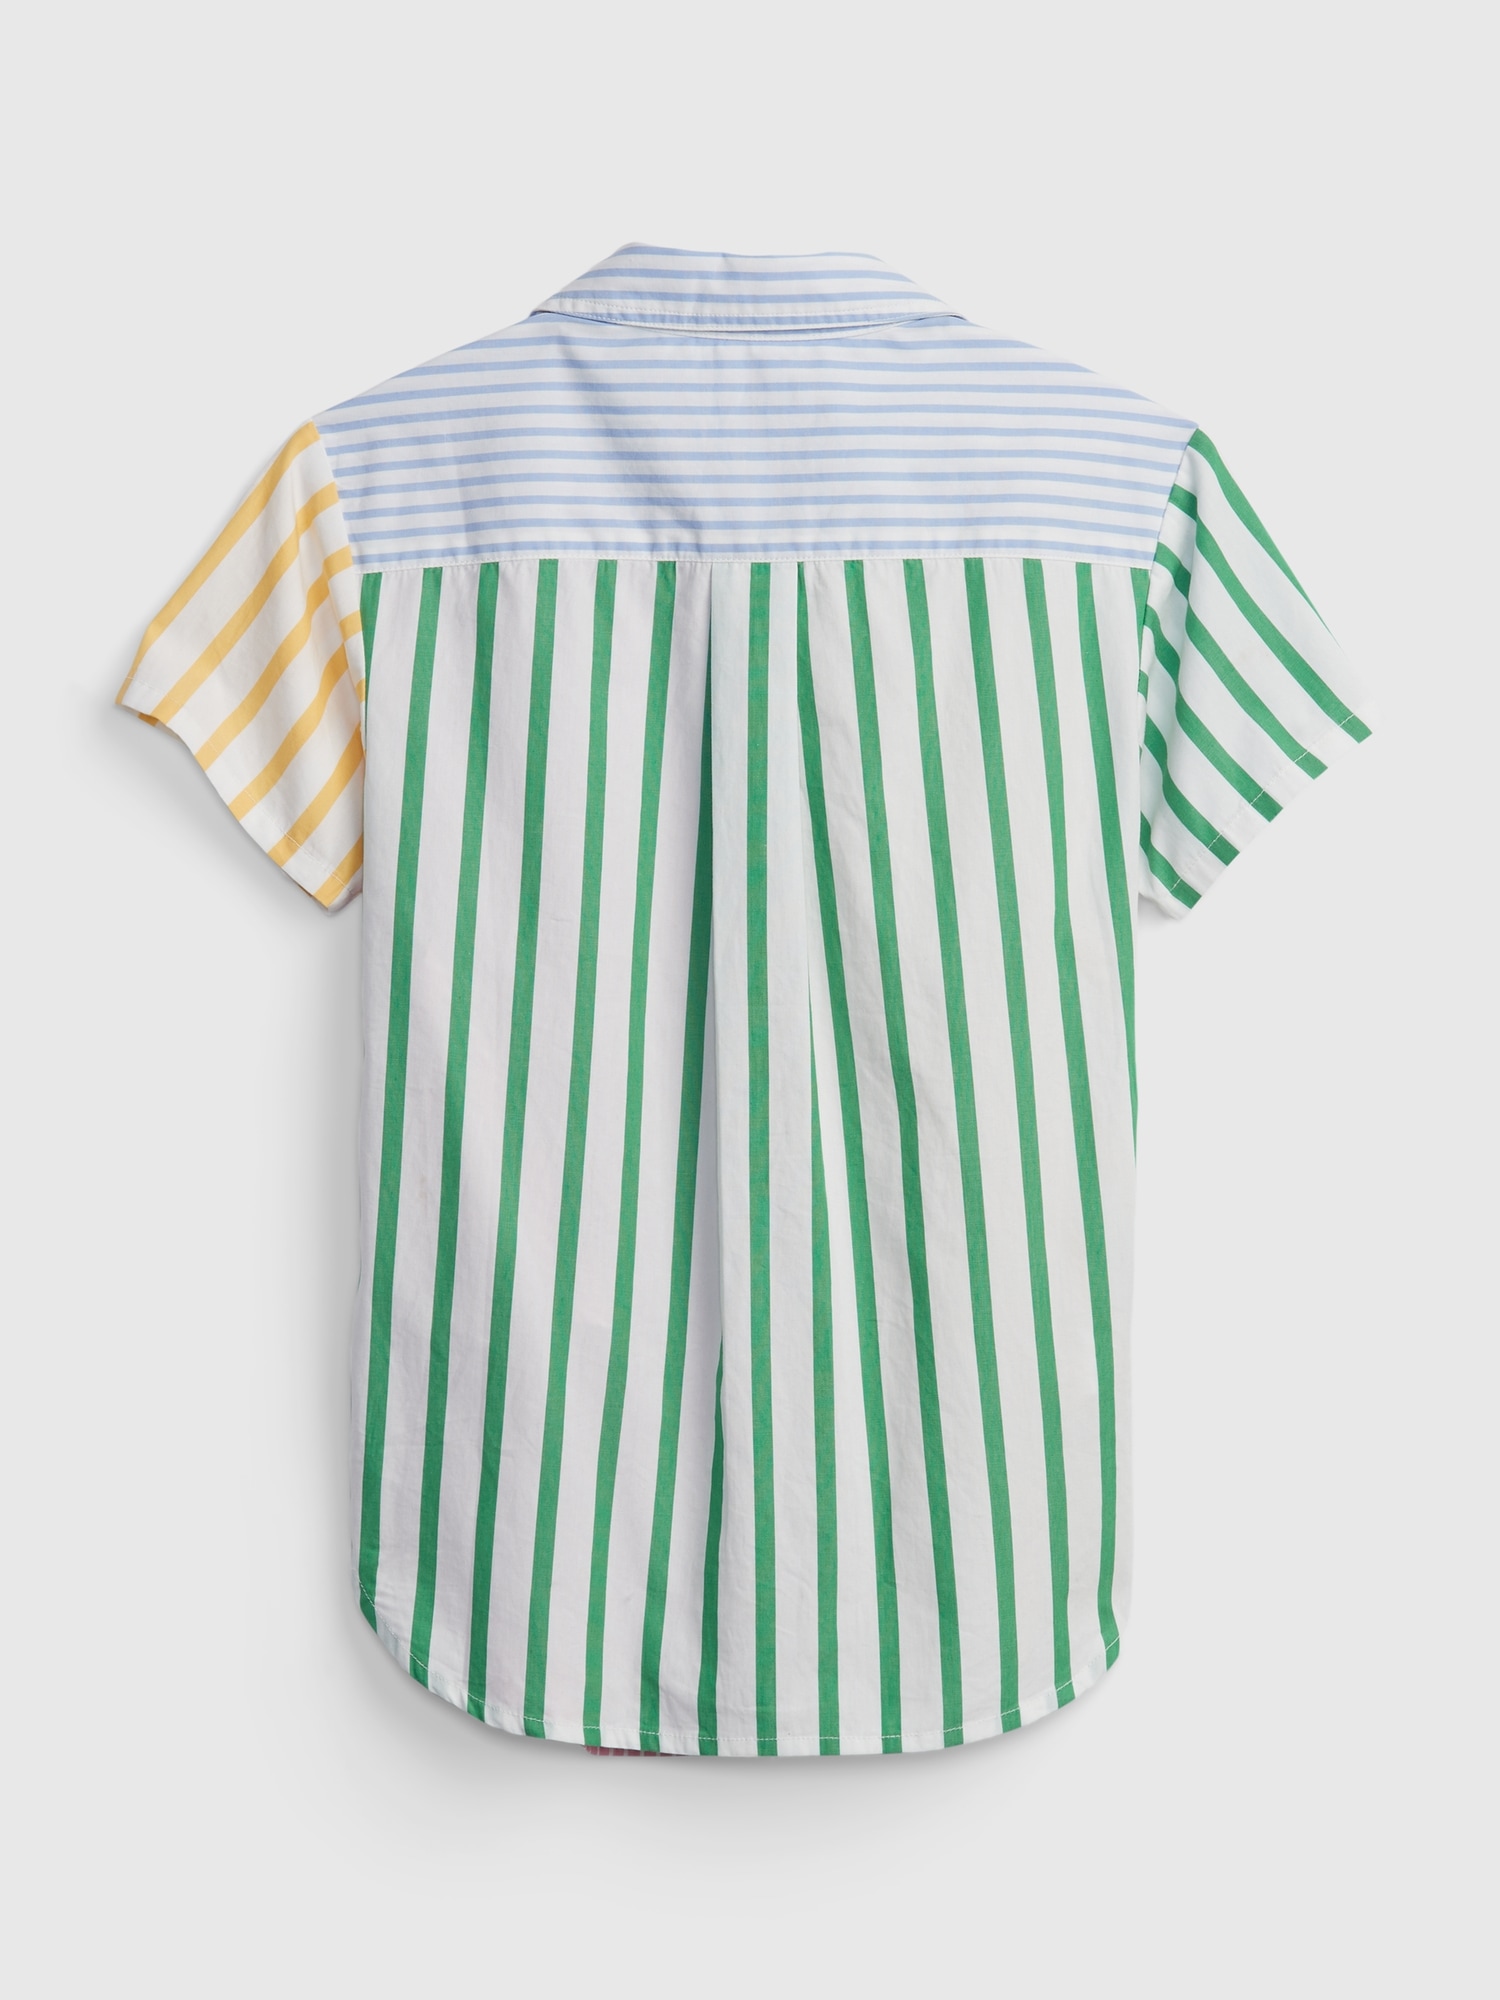 Toddler Mix-Stripe Shirtdress | Gap